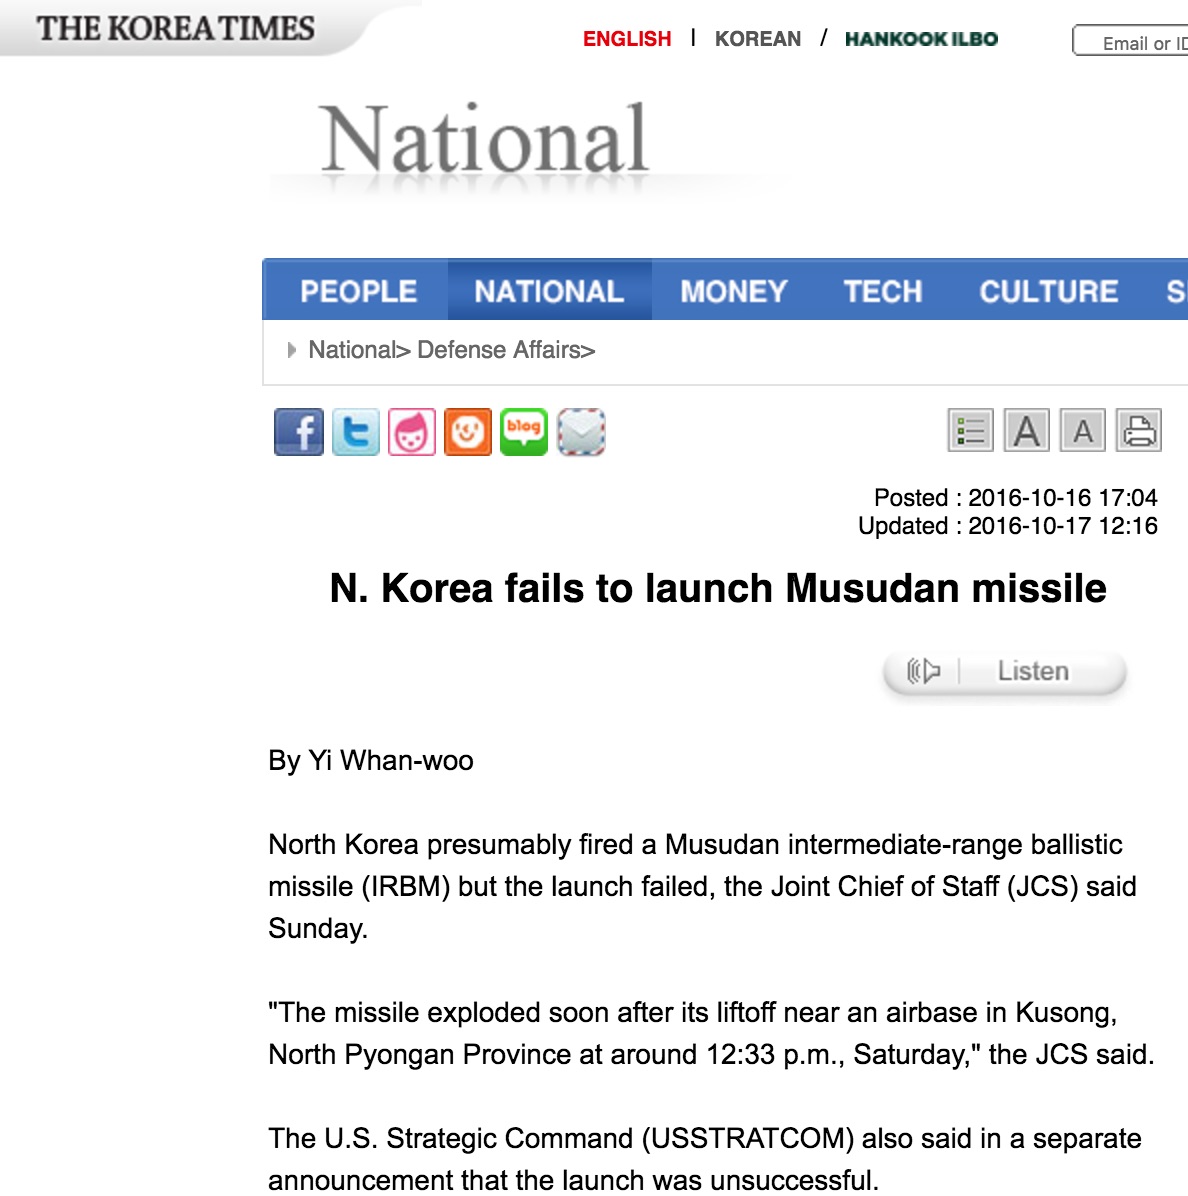 Si le lancement était confirmé ce serait un nouveau test de la part de Kim Jong-Un dans le but de finaliser la technologie de cec missile qui pourrait atteindre la base militaire américaine de Guam. Copie d'écran du Korea Times, le 17 octobre 2016.